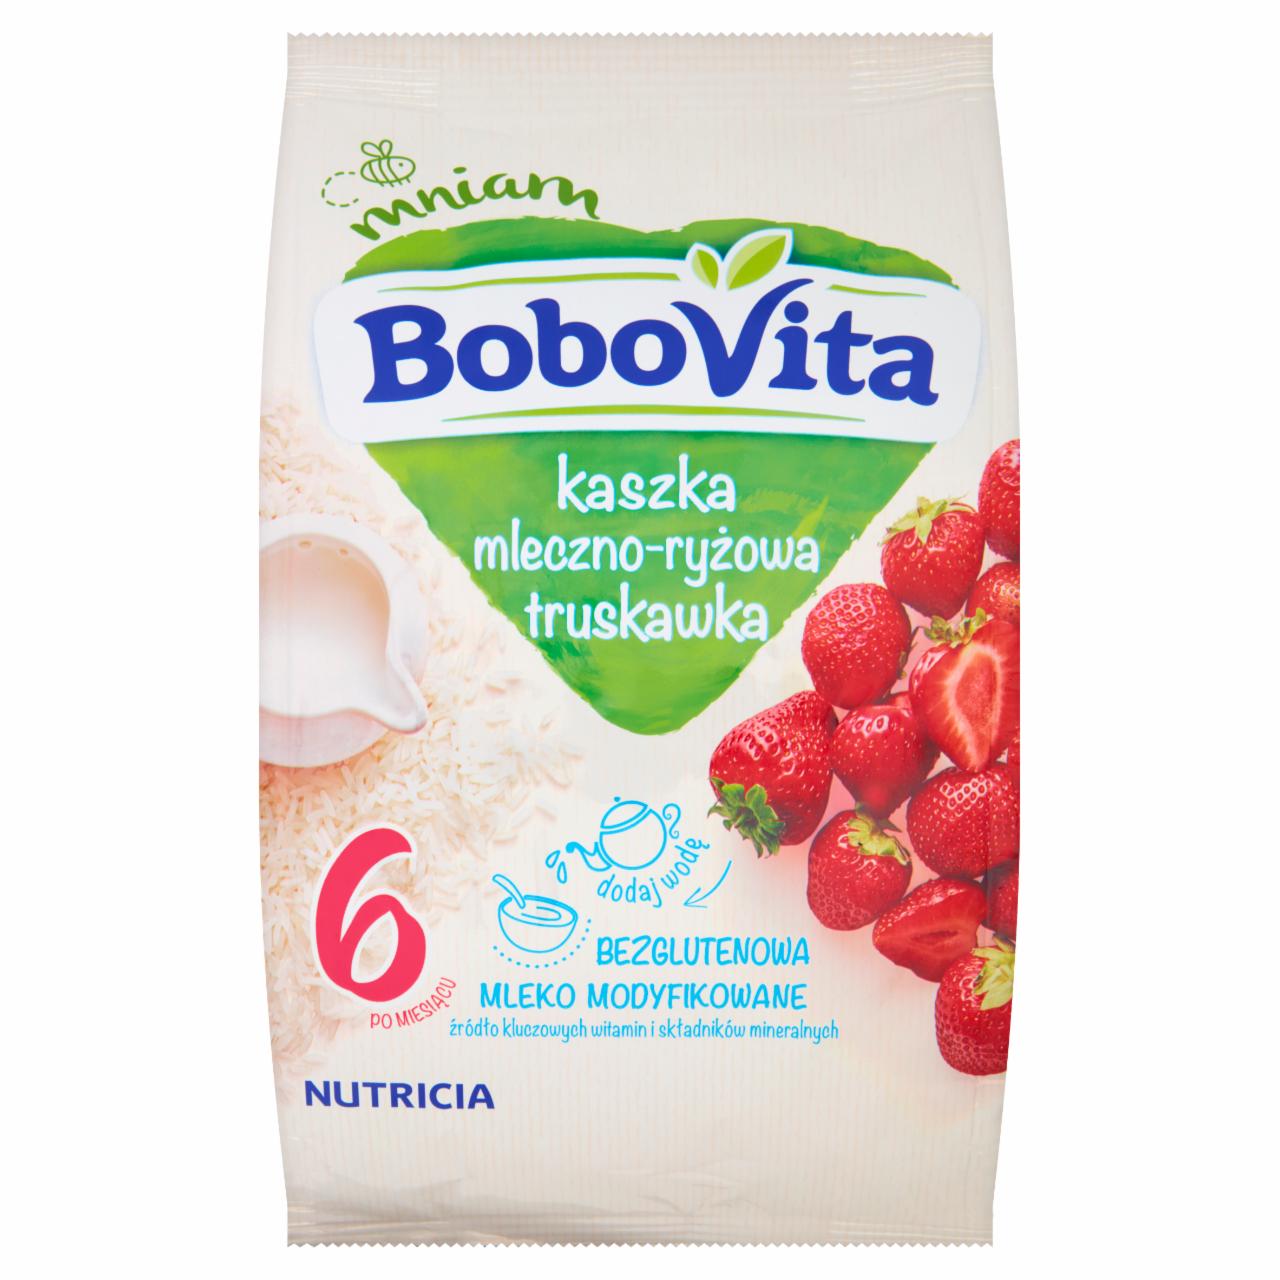 Zdjęcia - BoboVita Kaszka mleczno-ryżowa truskawka po 6 miesiącu 230 g